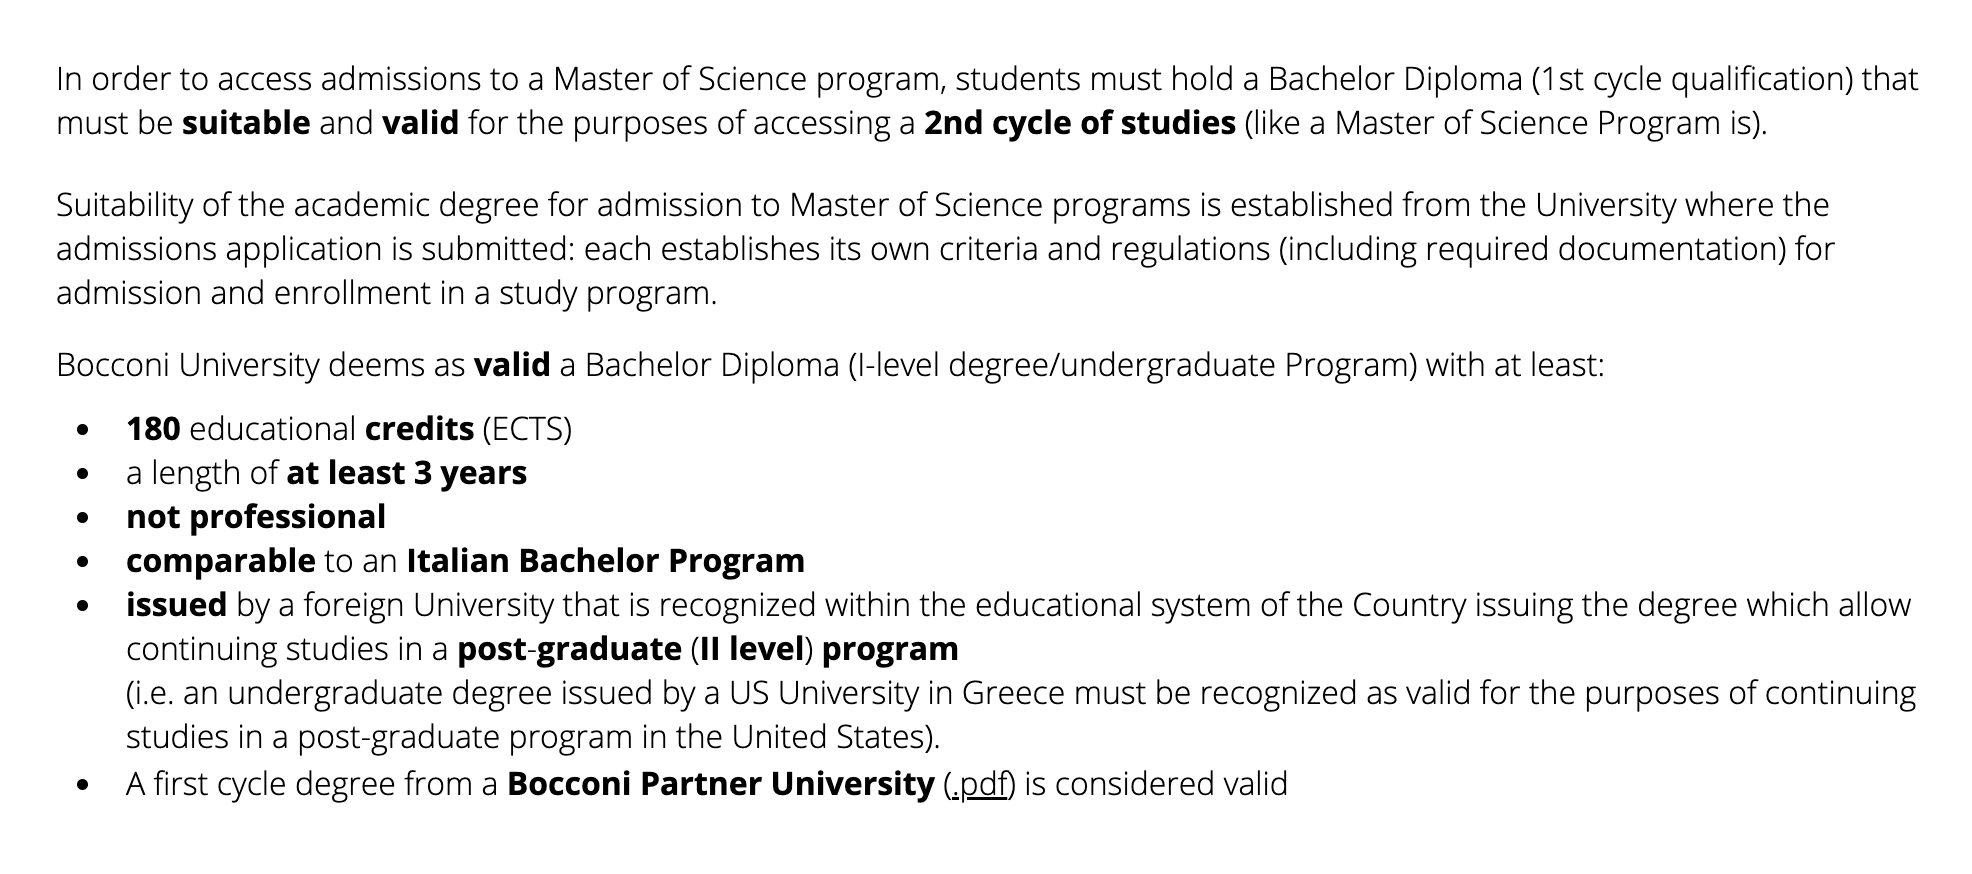 Одно из требований к бакалаврскому диплому в Боккони — 180 образовательных кредитов в бакалавриате или эквивалентное количество часов